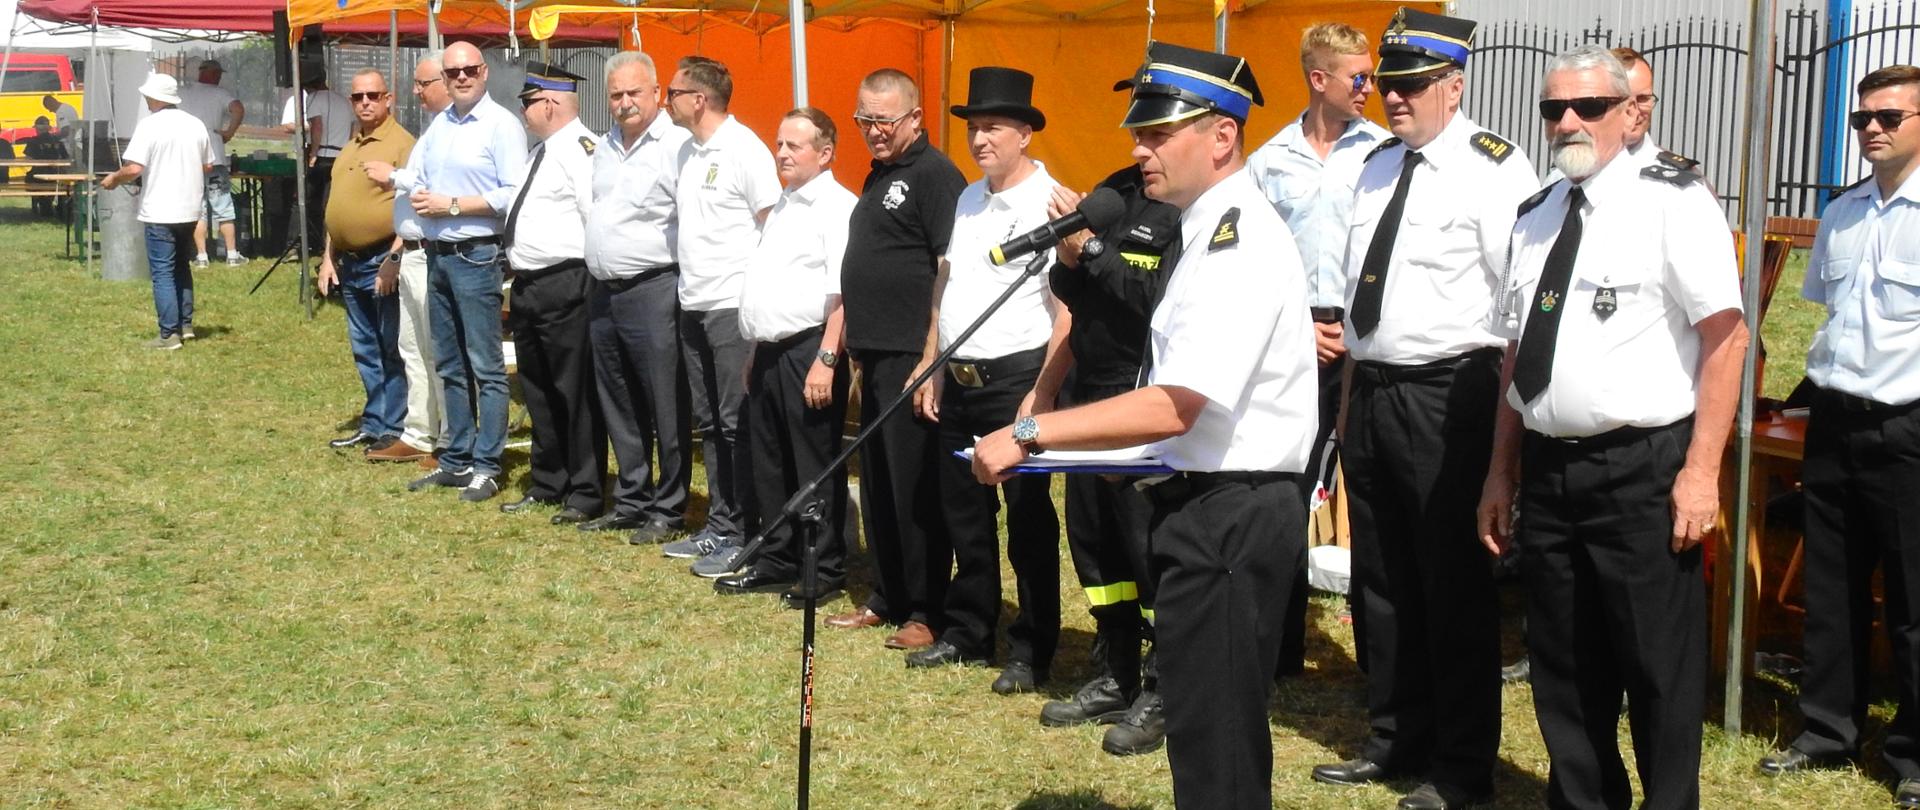 Zdjęcie przedstawia umundurowanych strażaków wraz z współorganizatorami zawodów stojących w szeregu. Na pierwszym planie stoi strażak w białej koszuli mówiący do mikrofonu. W tle widoczne są żółte namioty z napisem Gmina Radzymin.